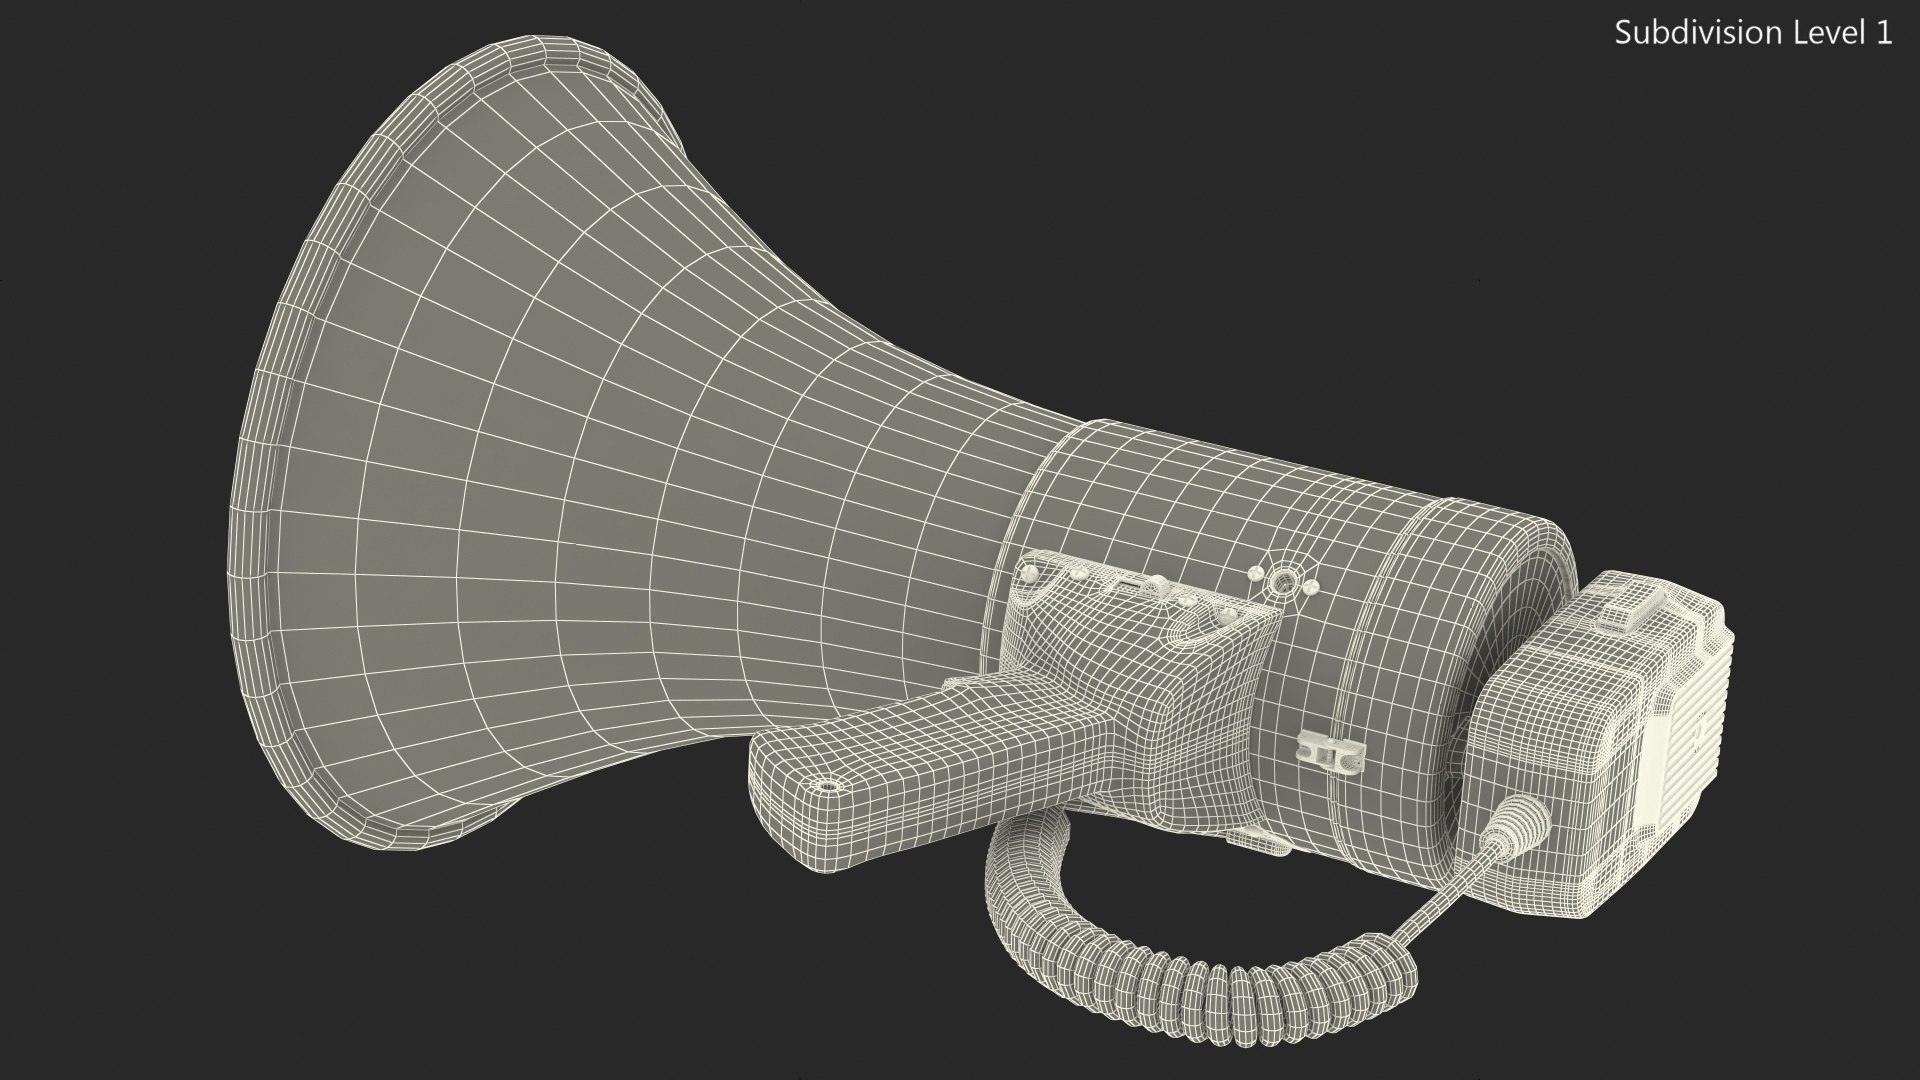 Megaphone bullhorn speaker siren 3D model - TurboSquid 1637620